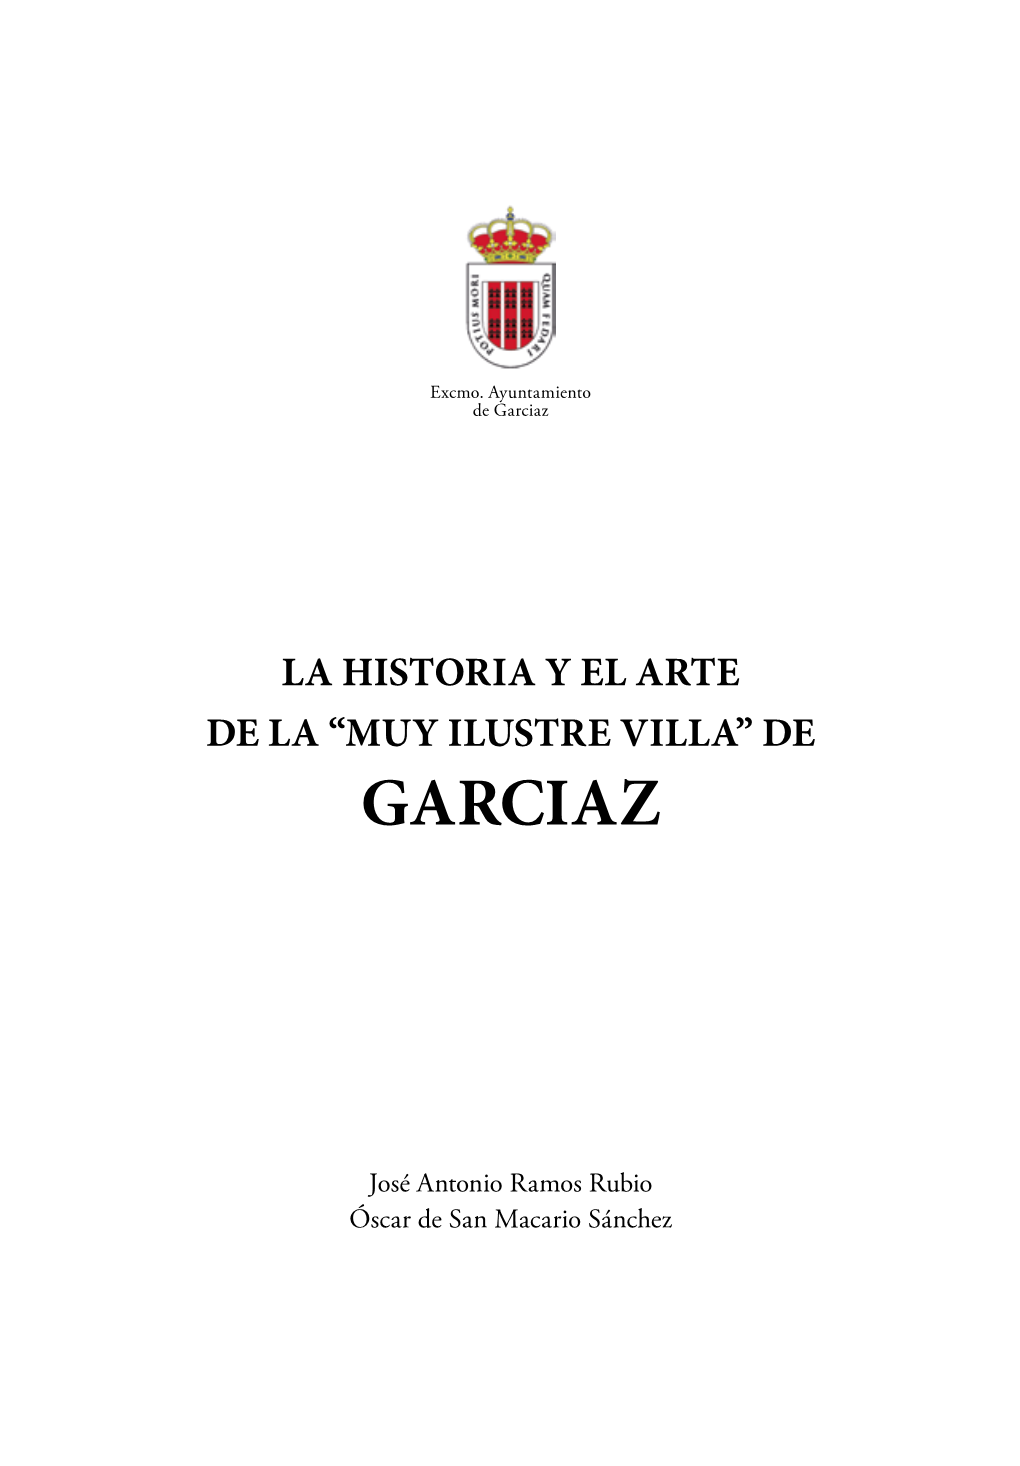 Muy Ilustre Villa” De Garciaz